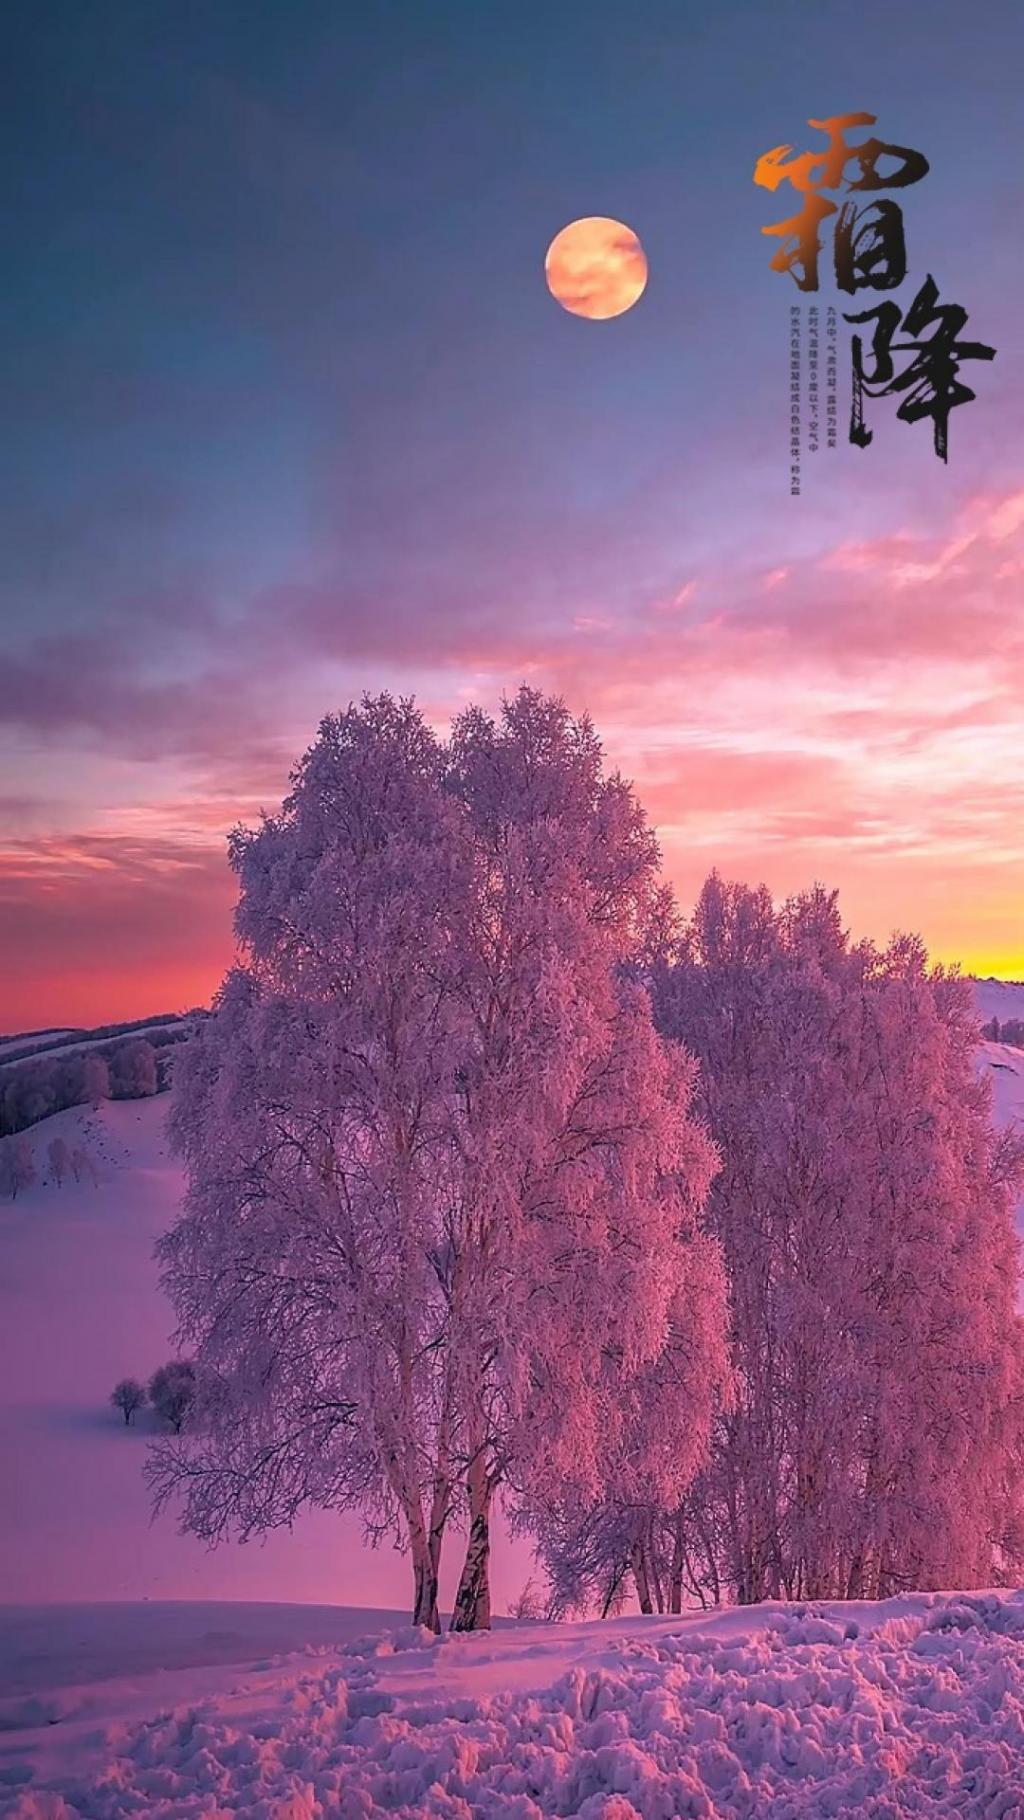 霜降唯美迷人雪景图片手机壁纸 网页图库手机版